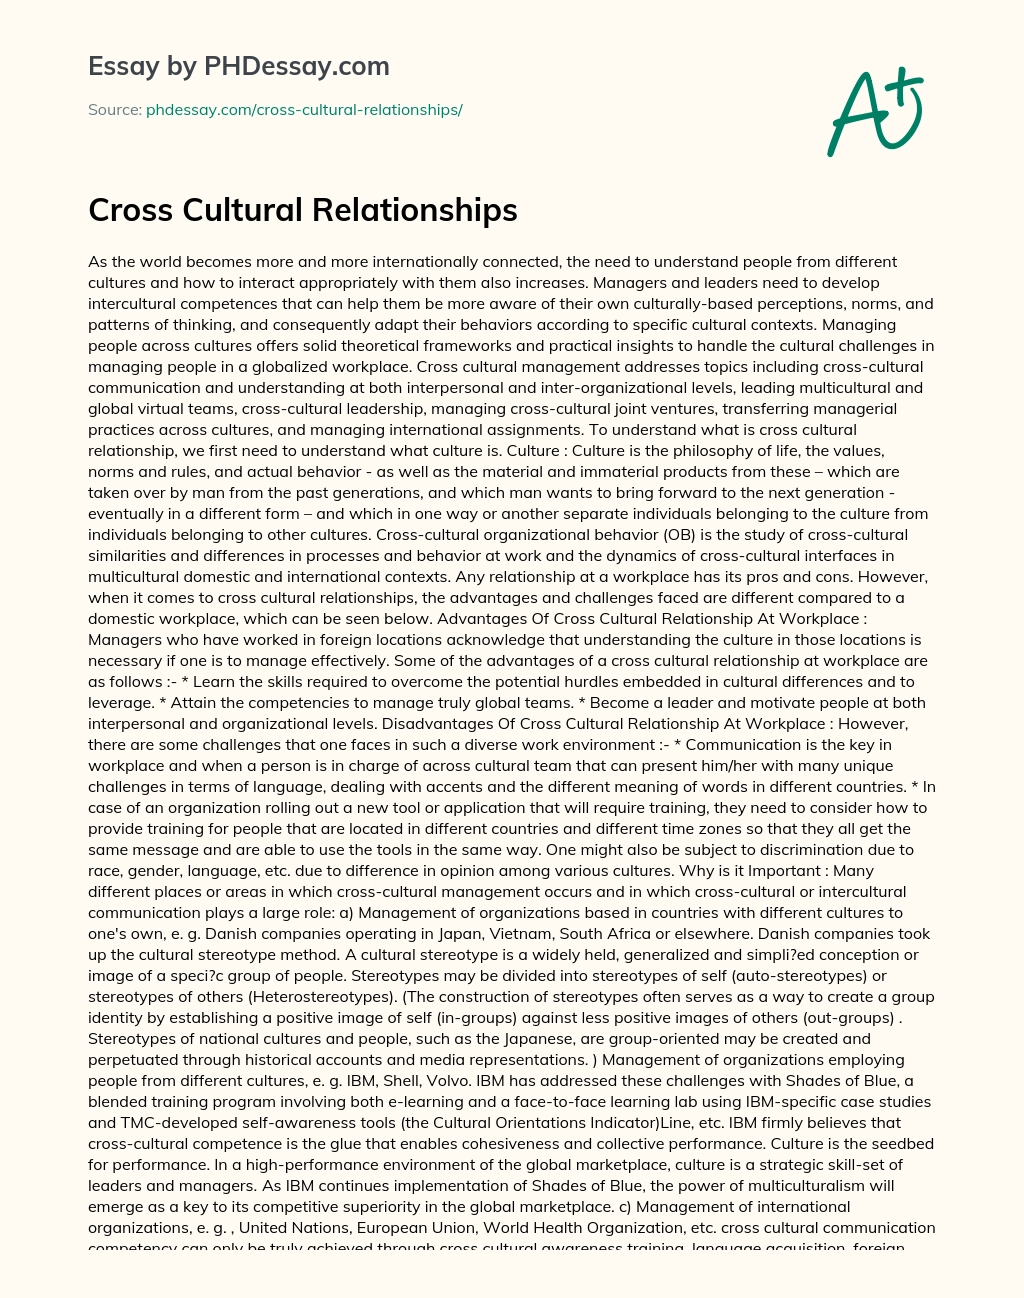 Cross Cultural Relationships essay